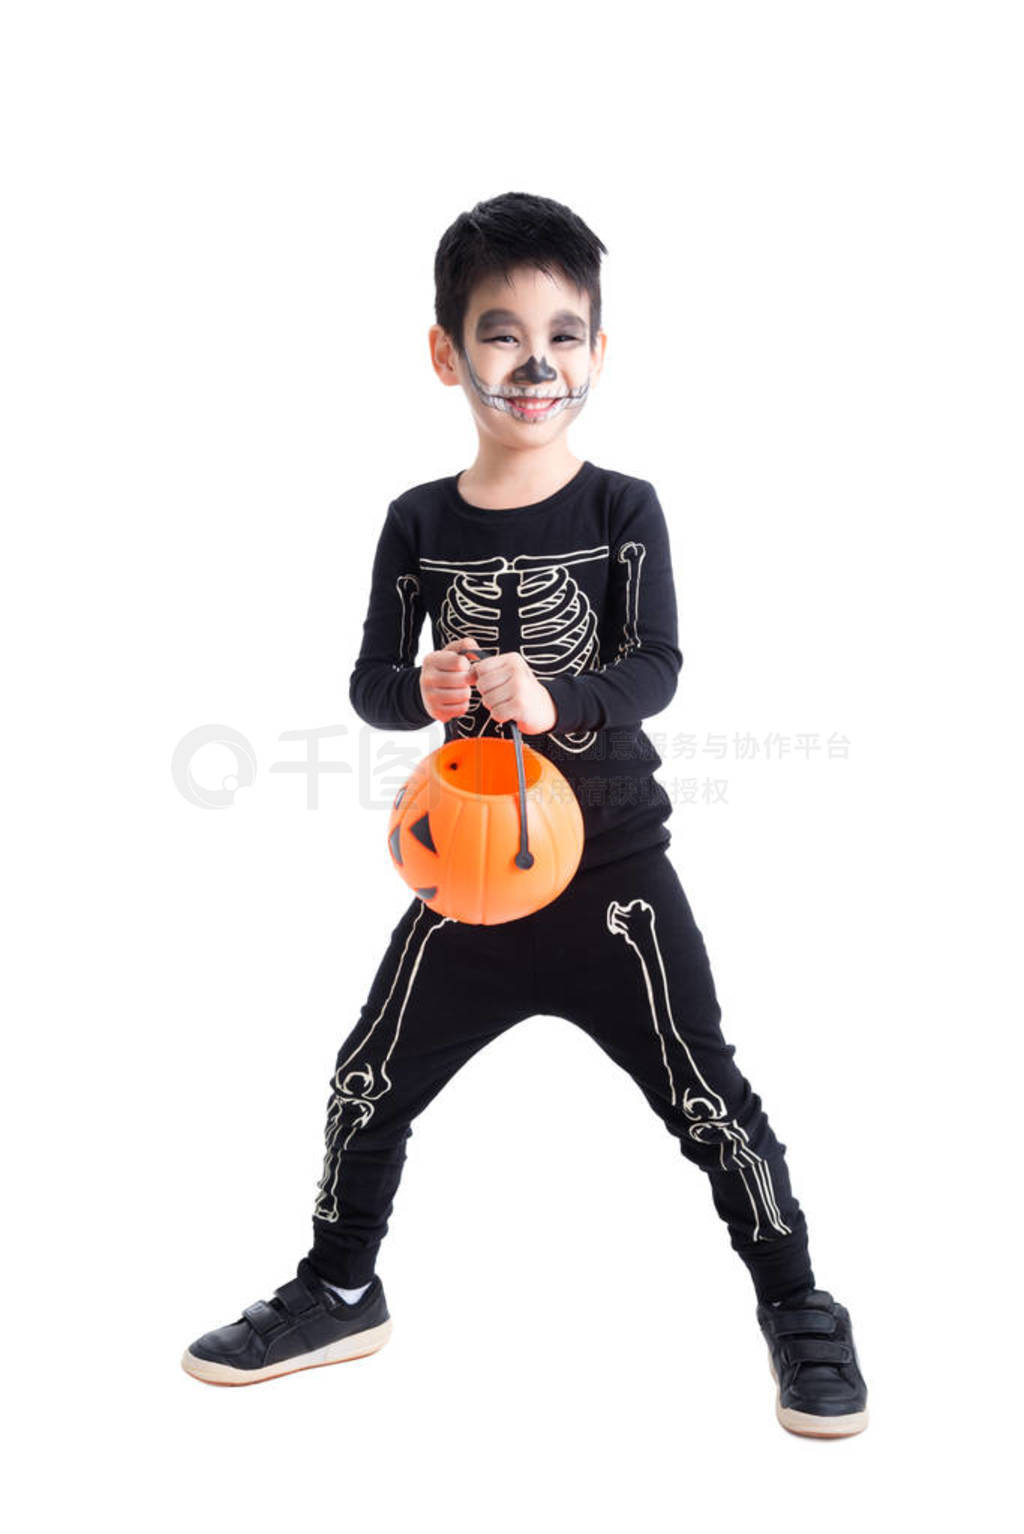 Little boy in skeleton costume for halloween celebration